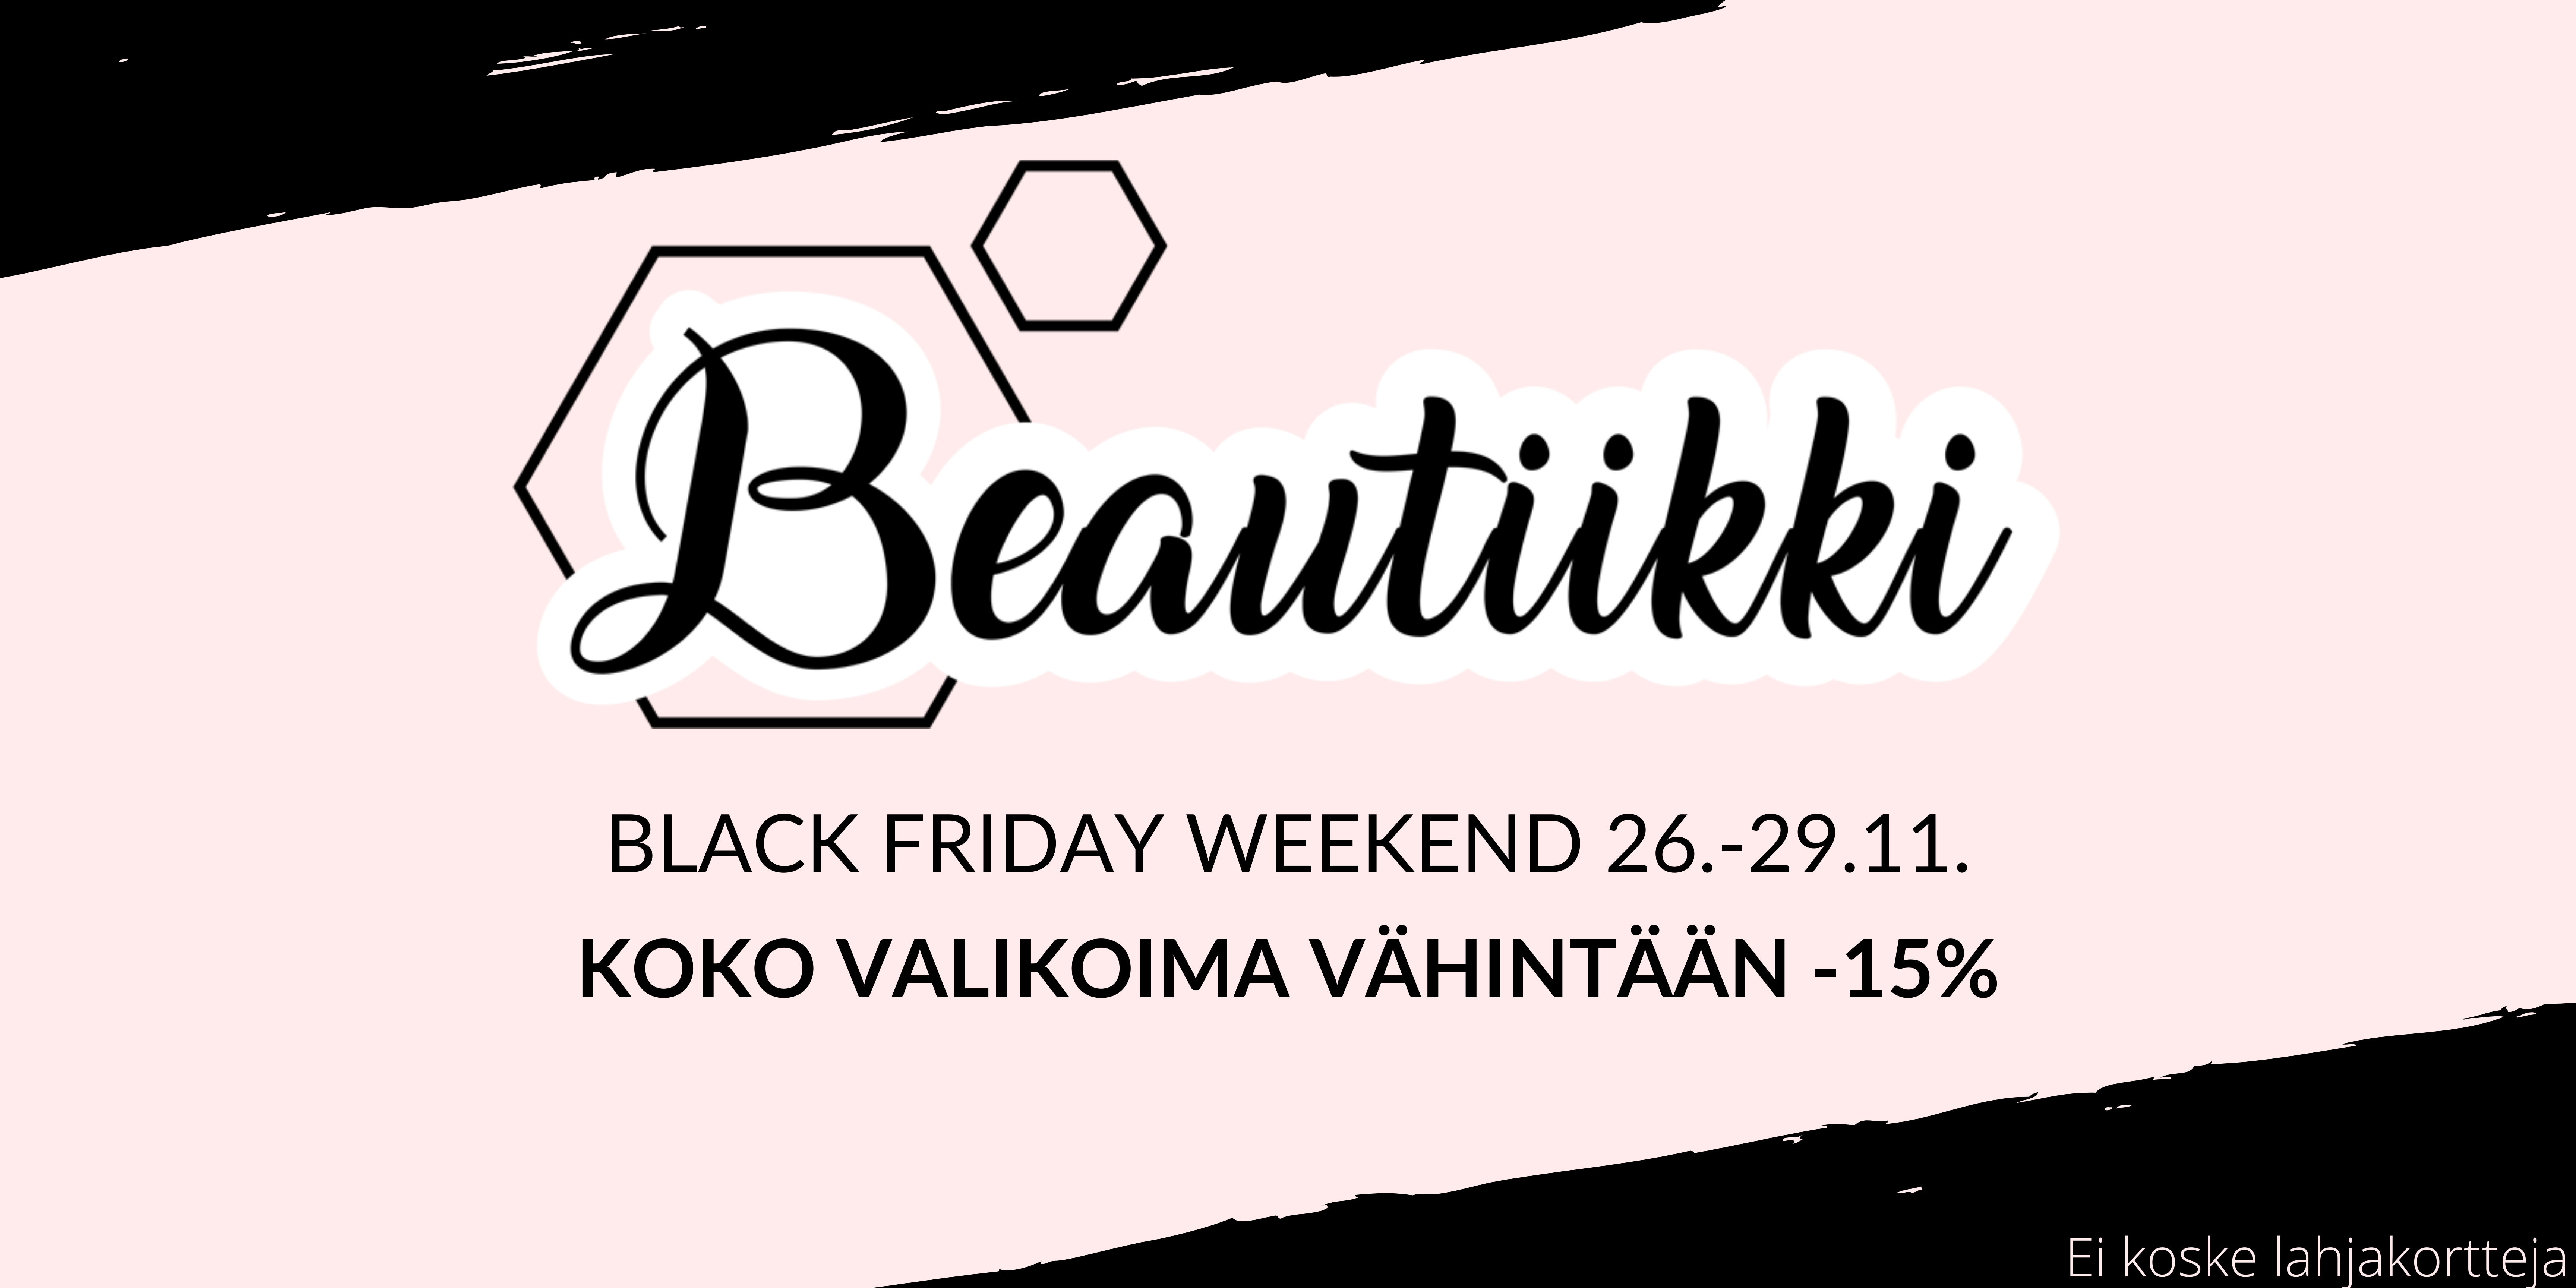 Beautiikki Black Friday